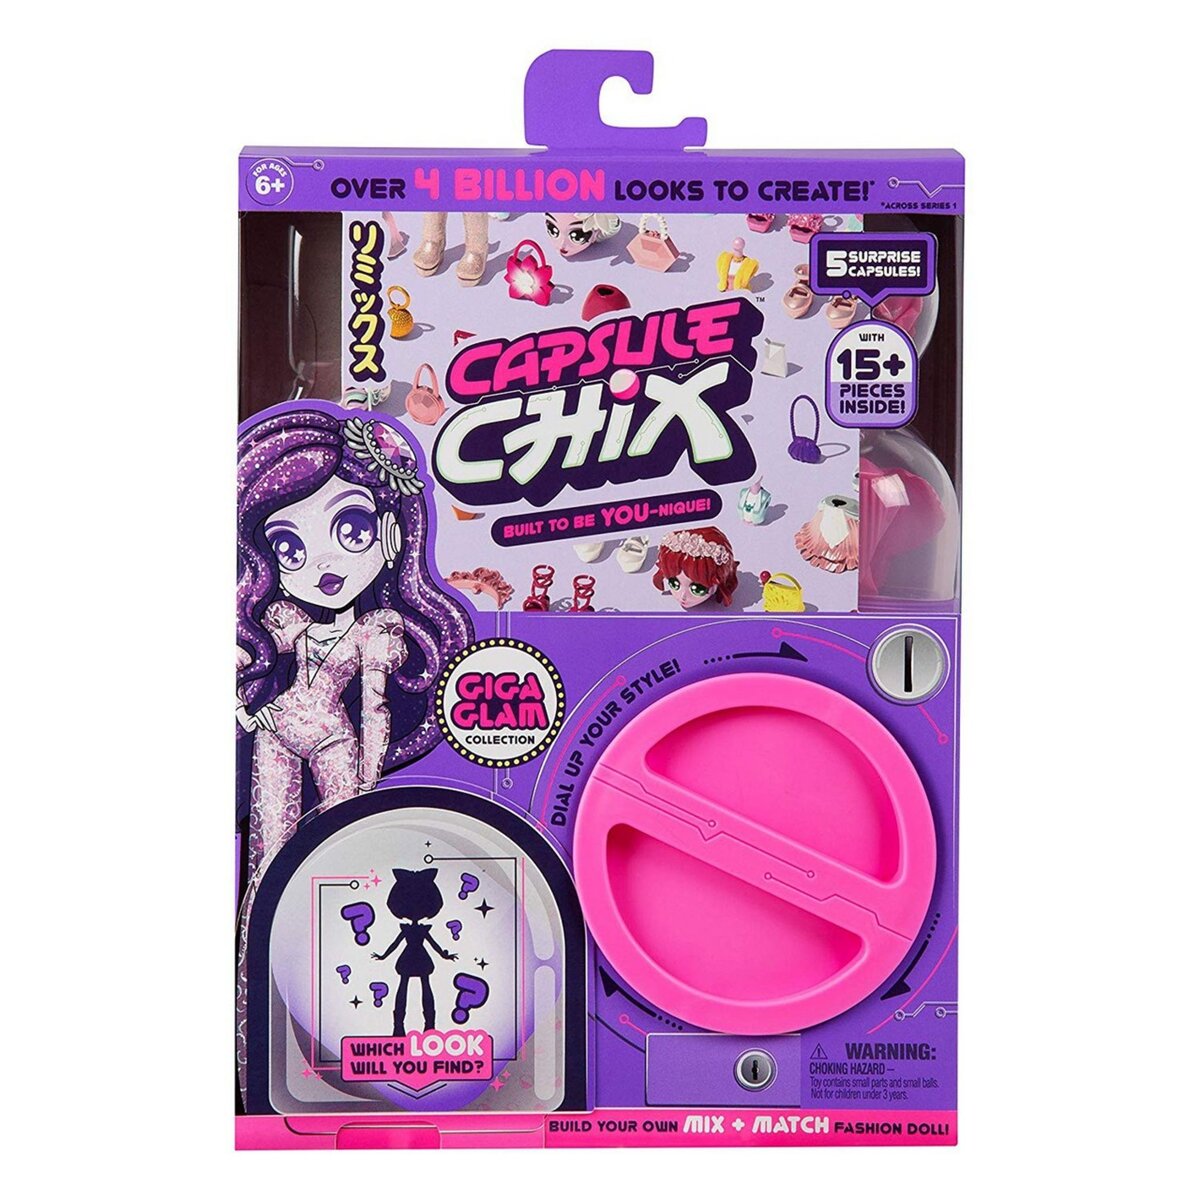 Capsule Chix - Pack poupée + accessoires Giga Glam collection